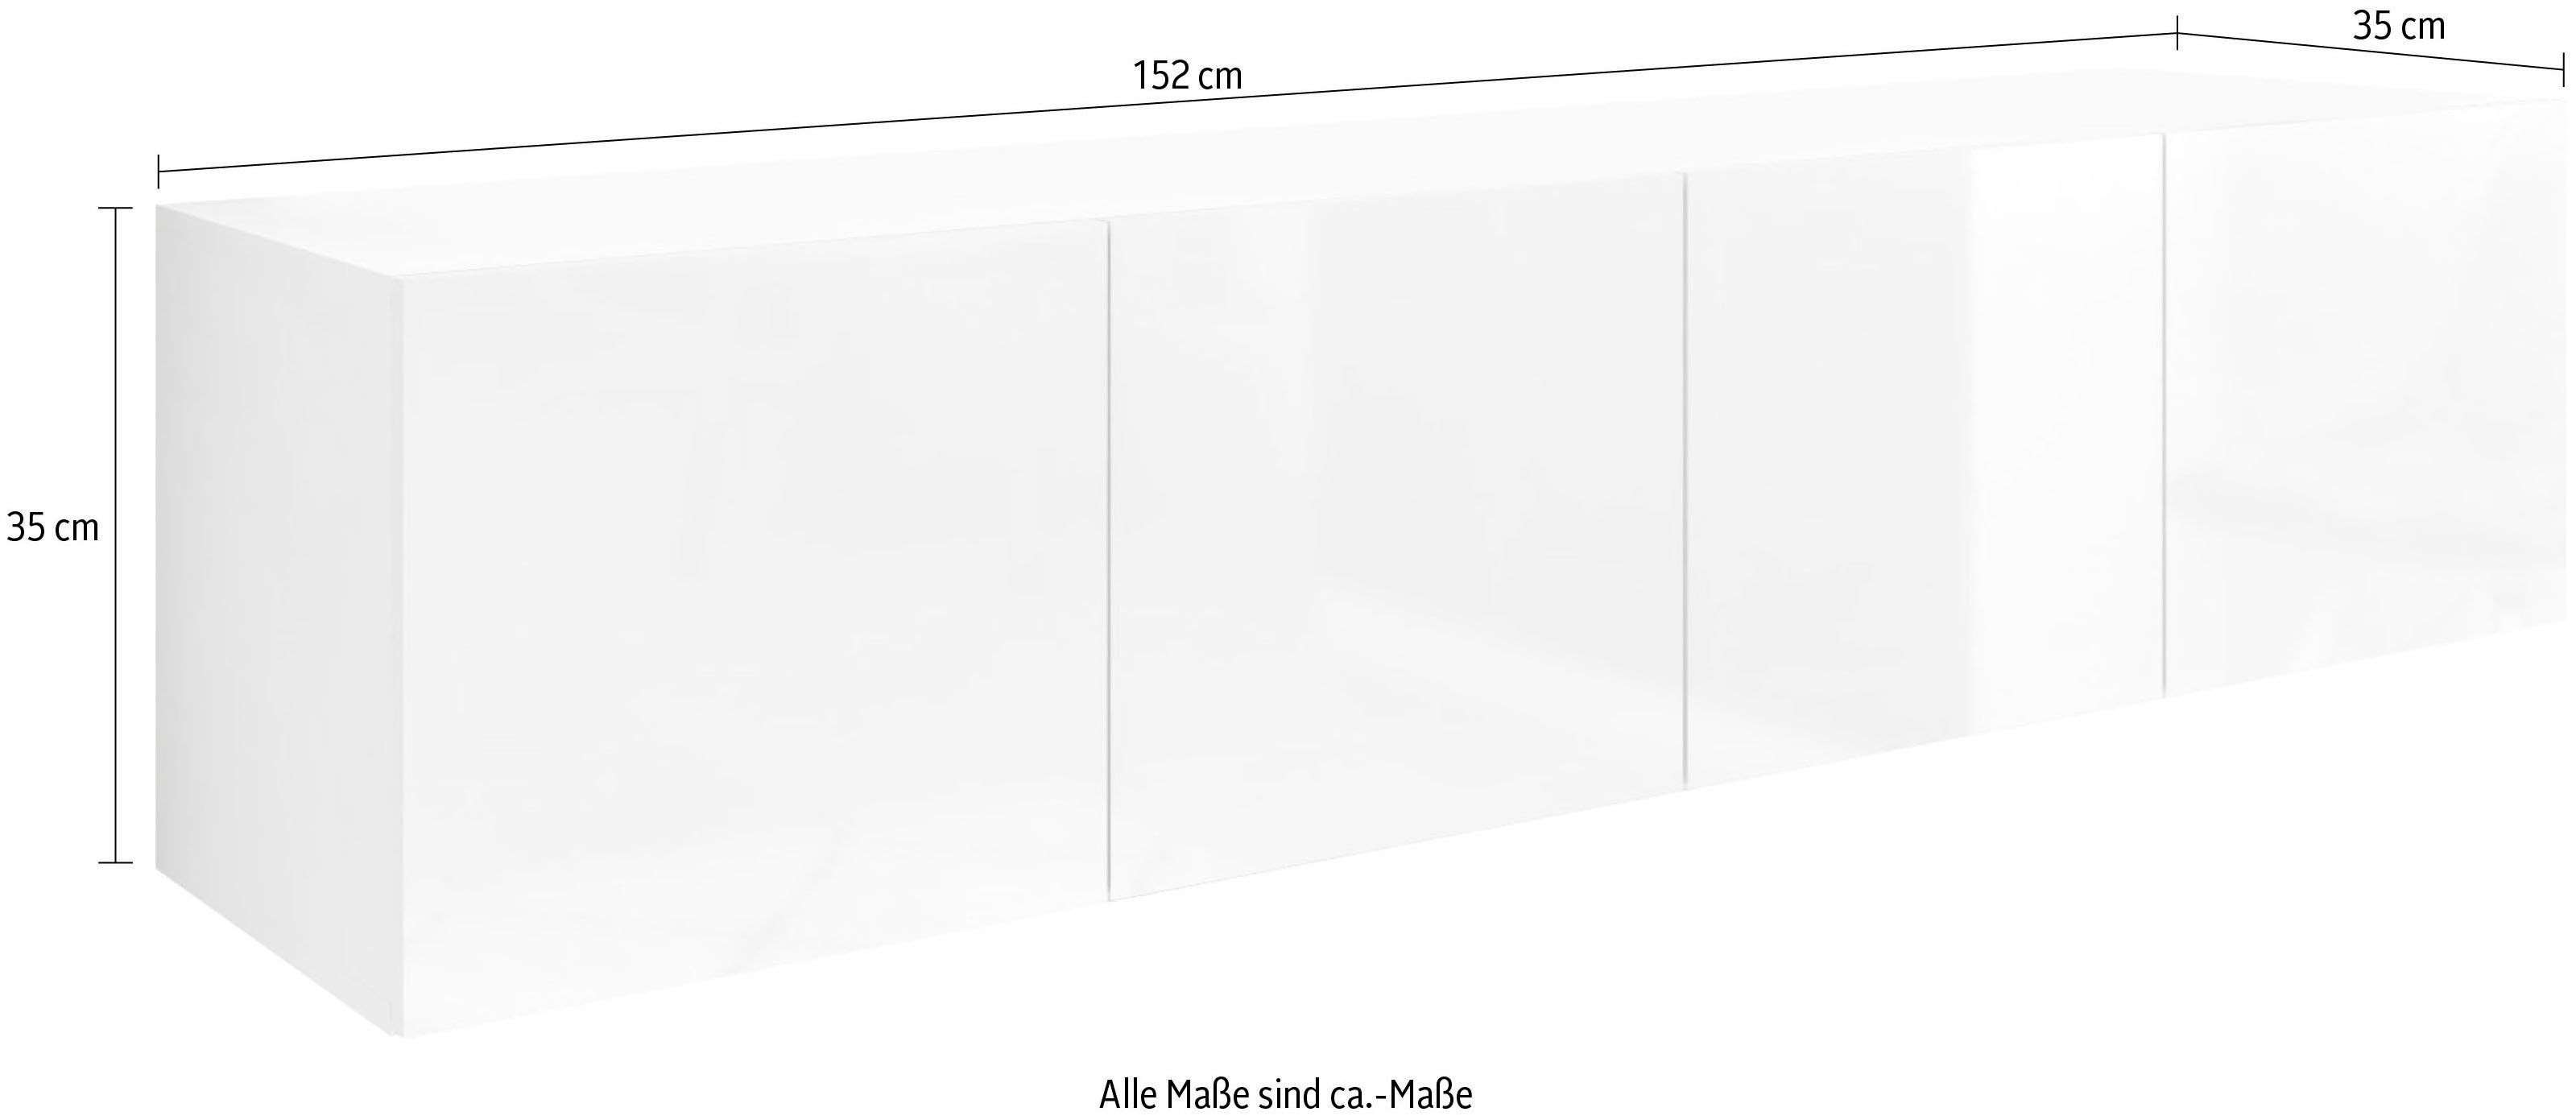 matt/eichefarben borchardt Breite schwarz Lowboard wotan Möbel hängend nur cm, Vaasa, 152